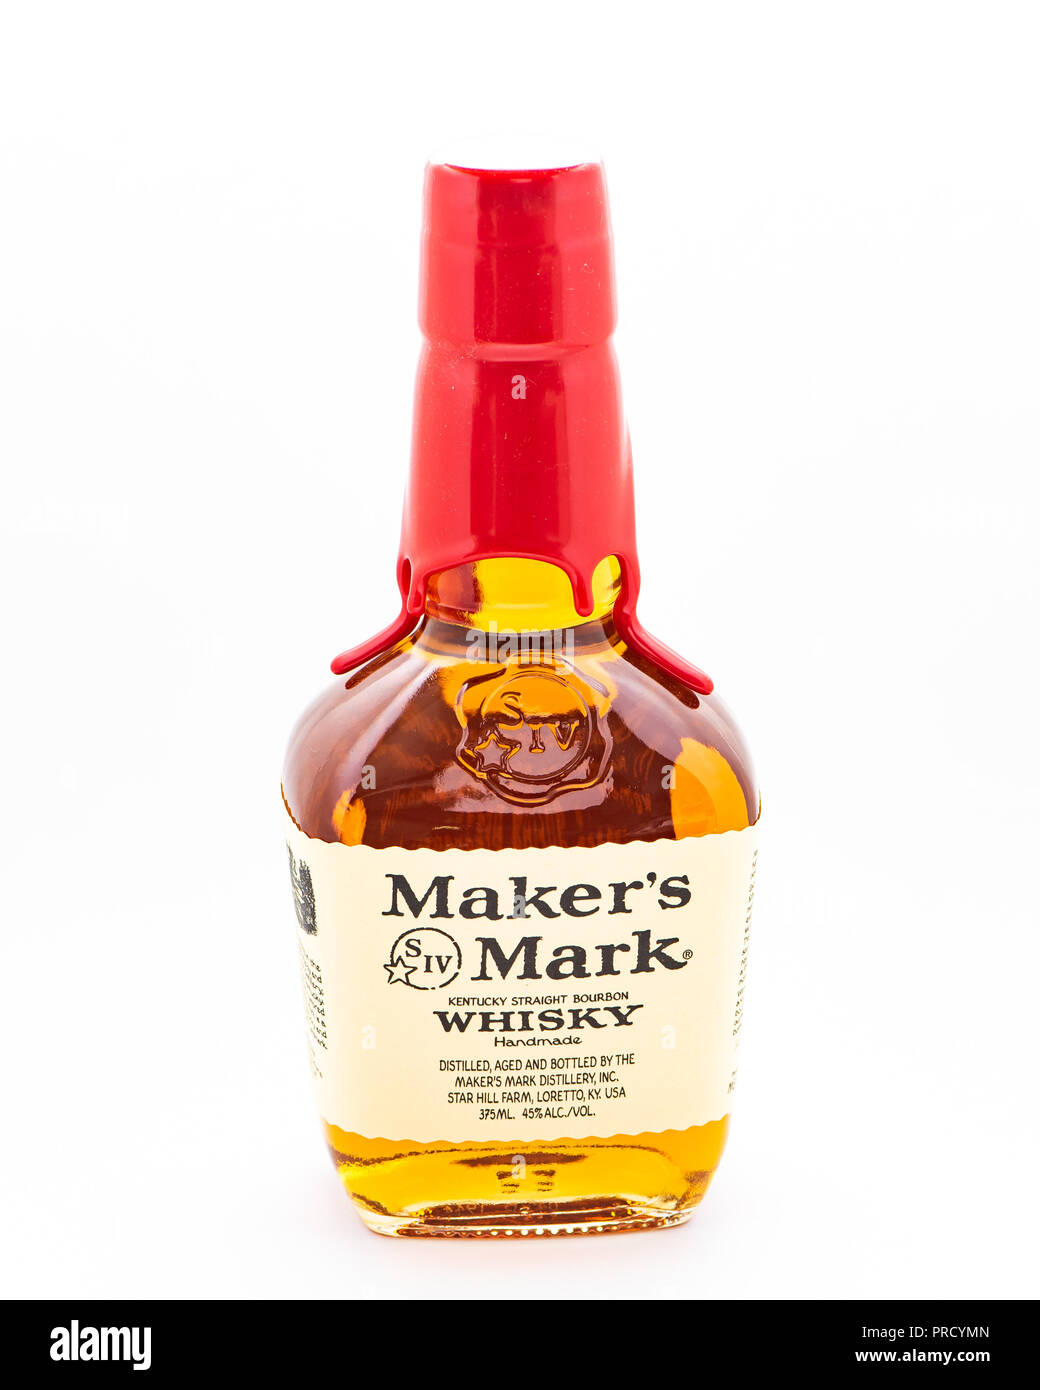 A sealed bottle of Maker's Mark Kentucky straight bourbon whisky. Stock Photo